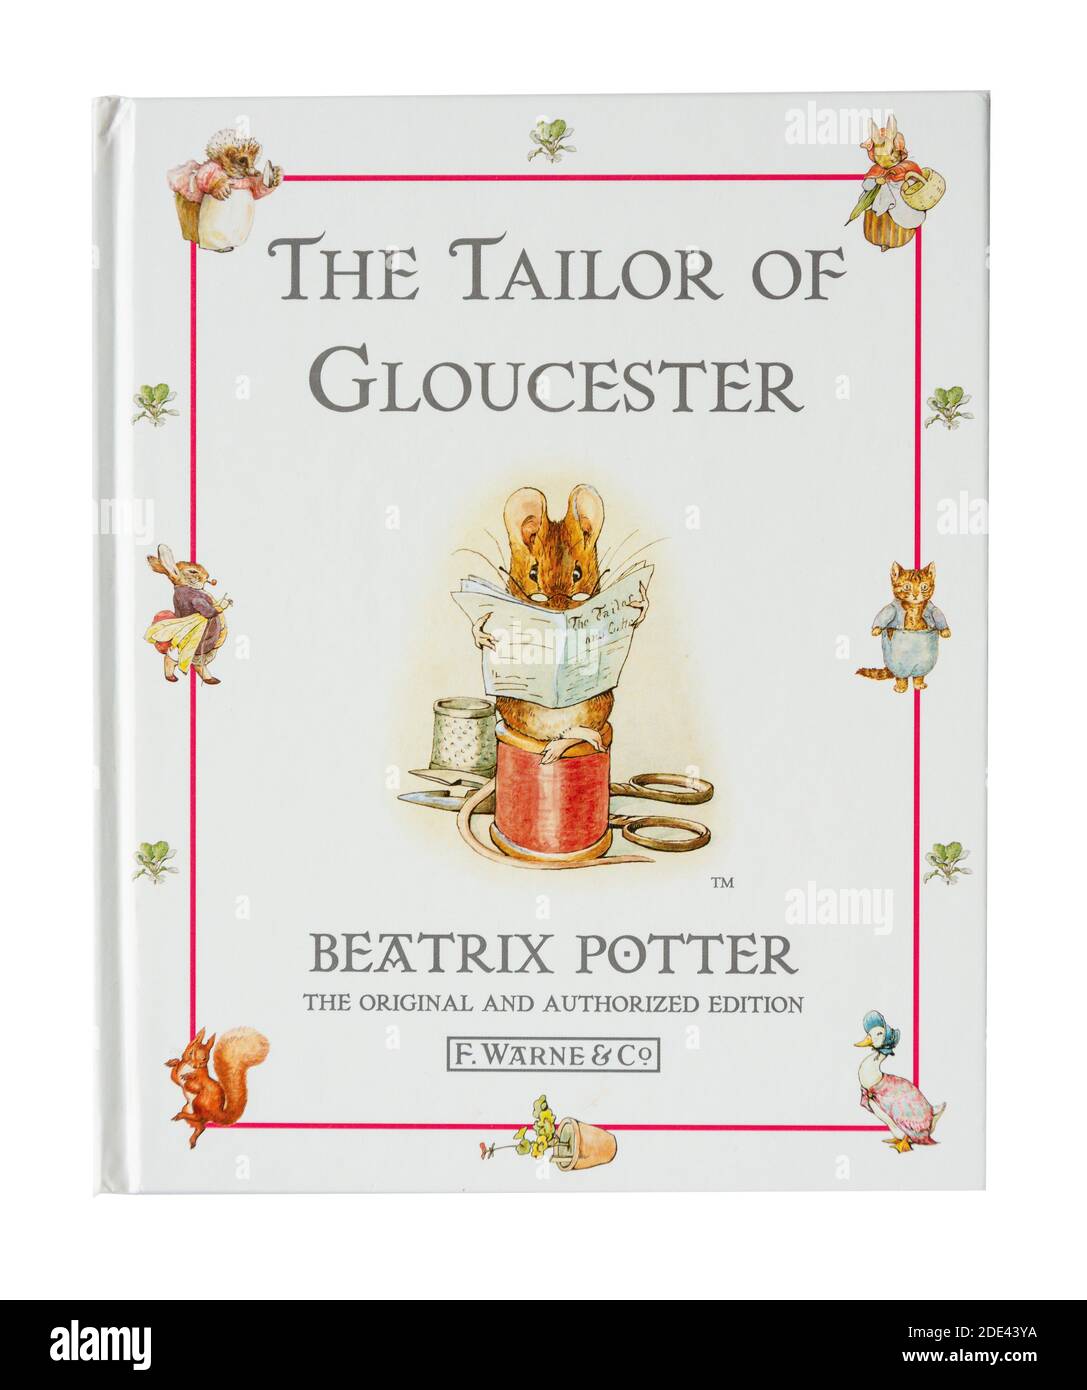 Livre pour enfants « The Taylor of Gloucester » de Beatrix Potter, Grand Londres, Angleterre, Royaume-Uni Banque D'Images